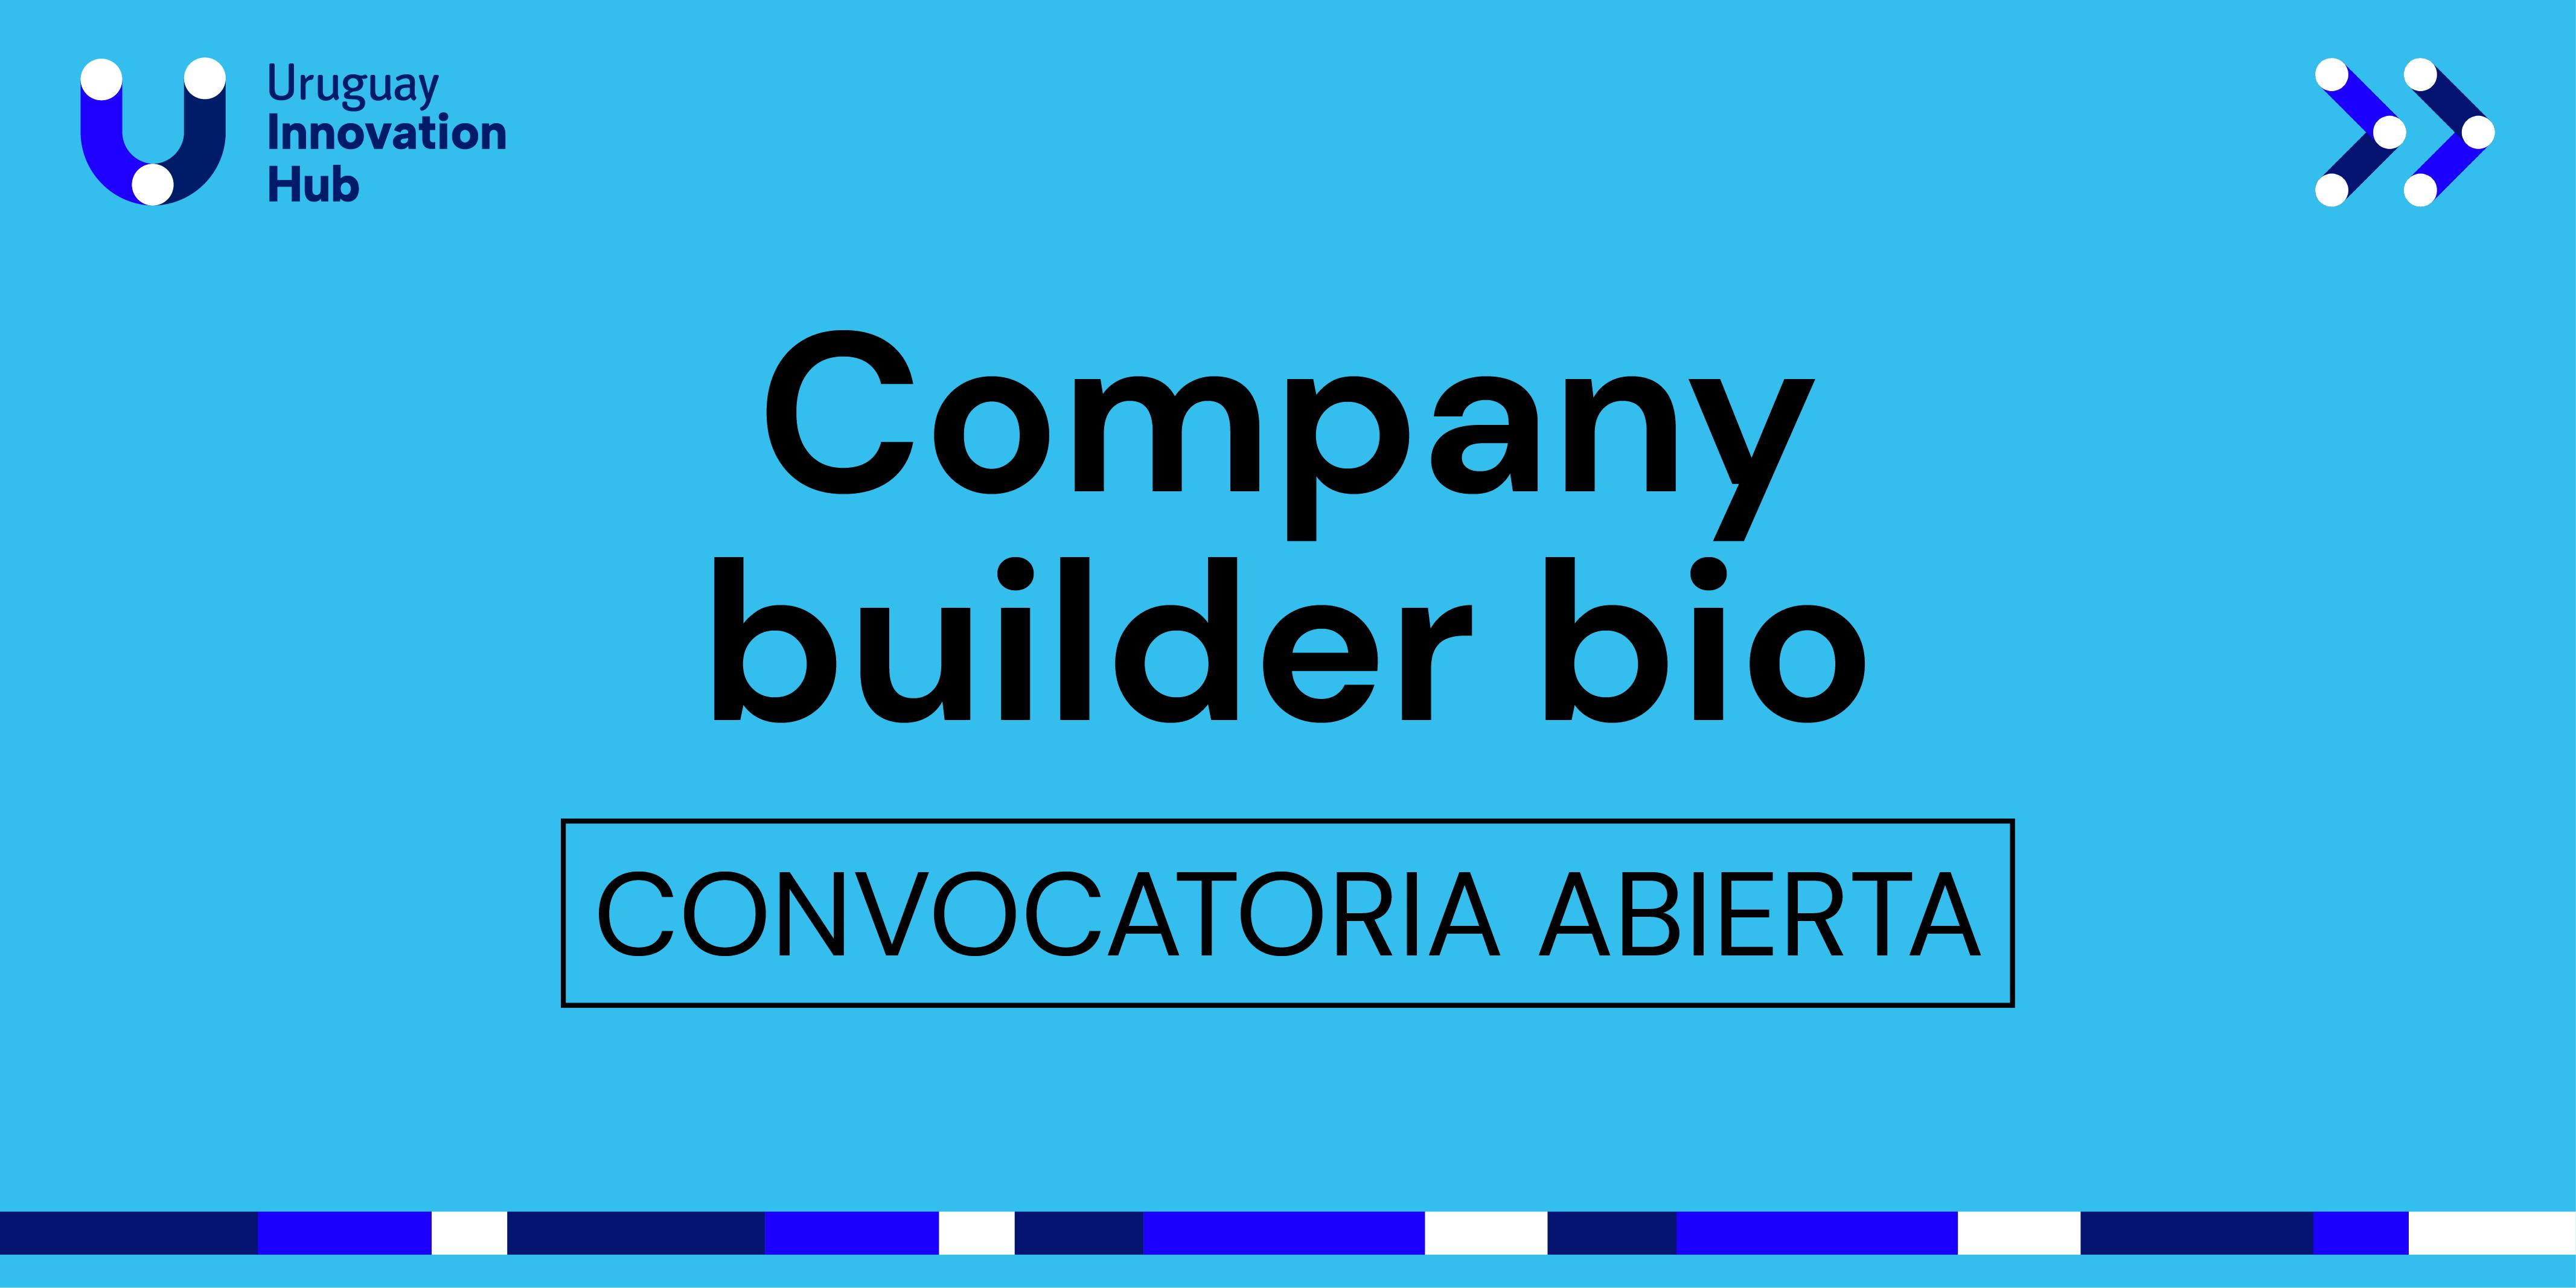 Company Builder Bio convocatoria abierta